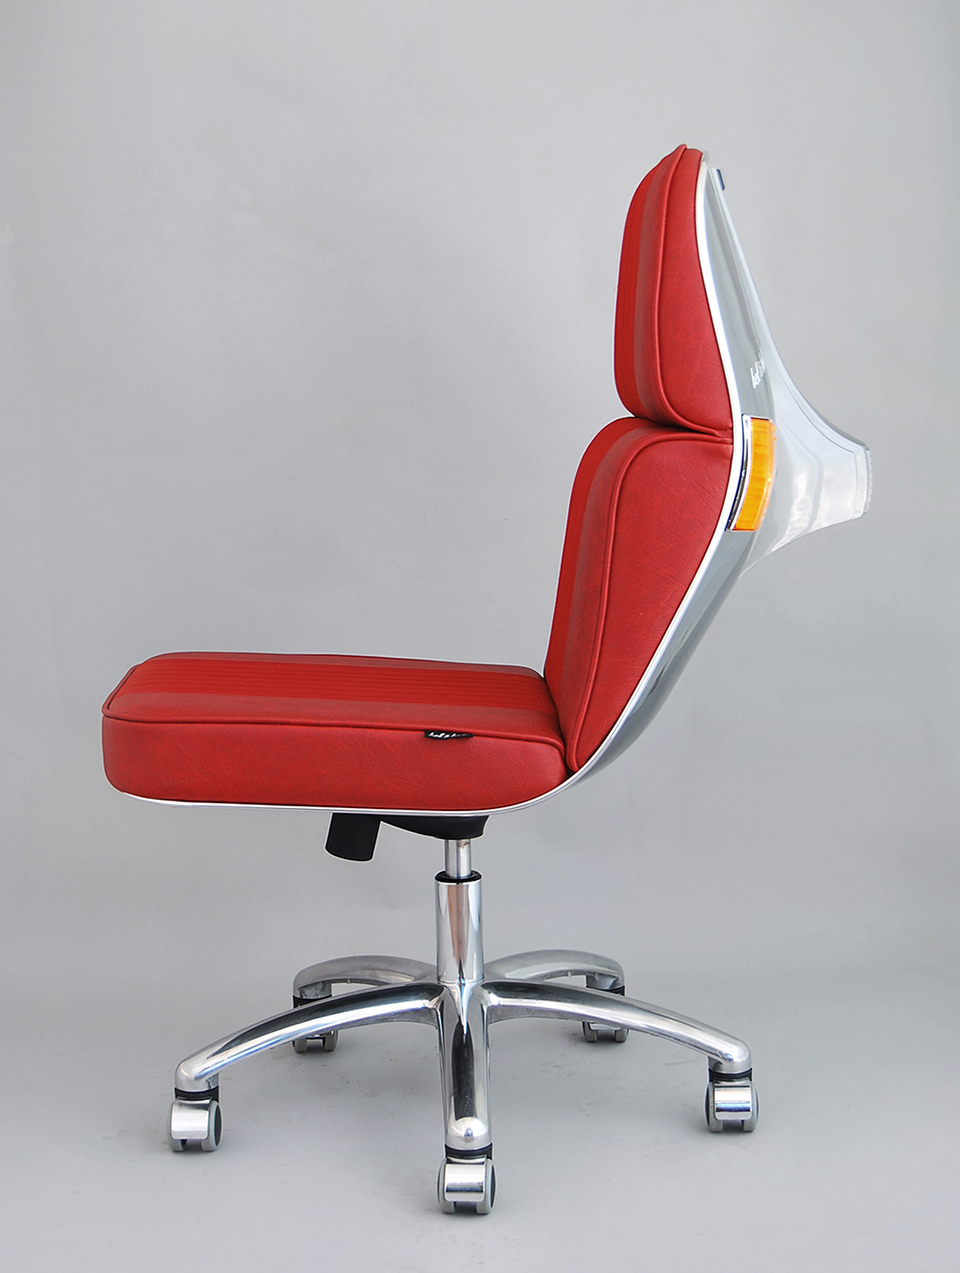 belbel-vespa-scooter-chair-design